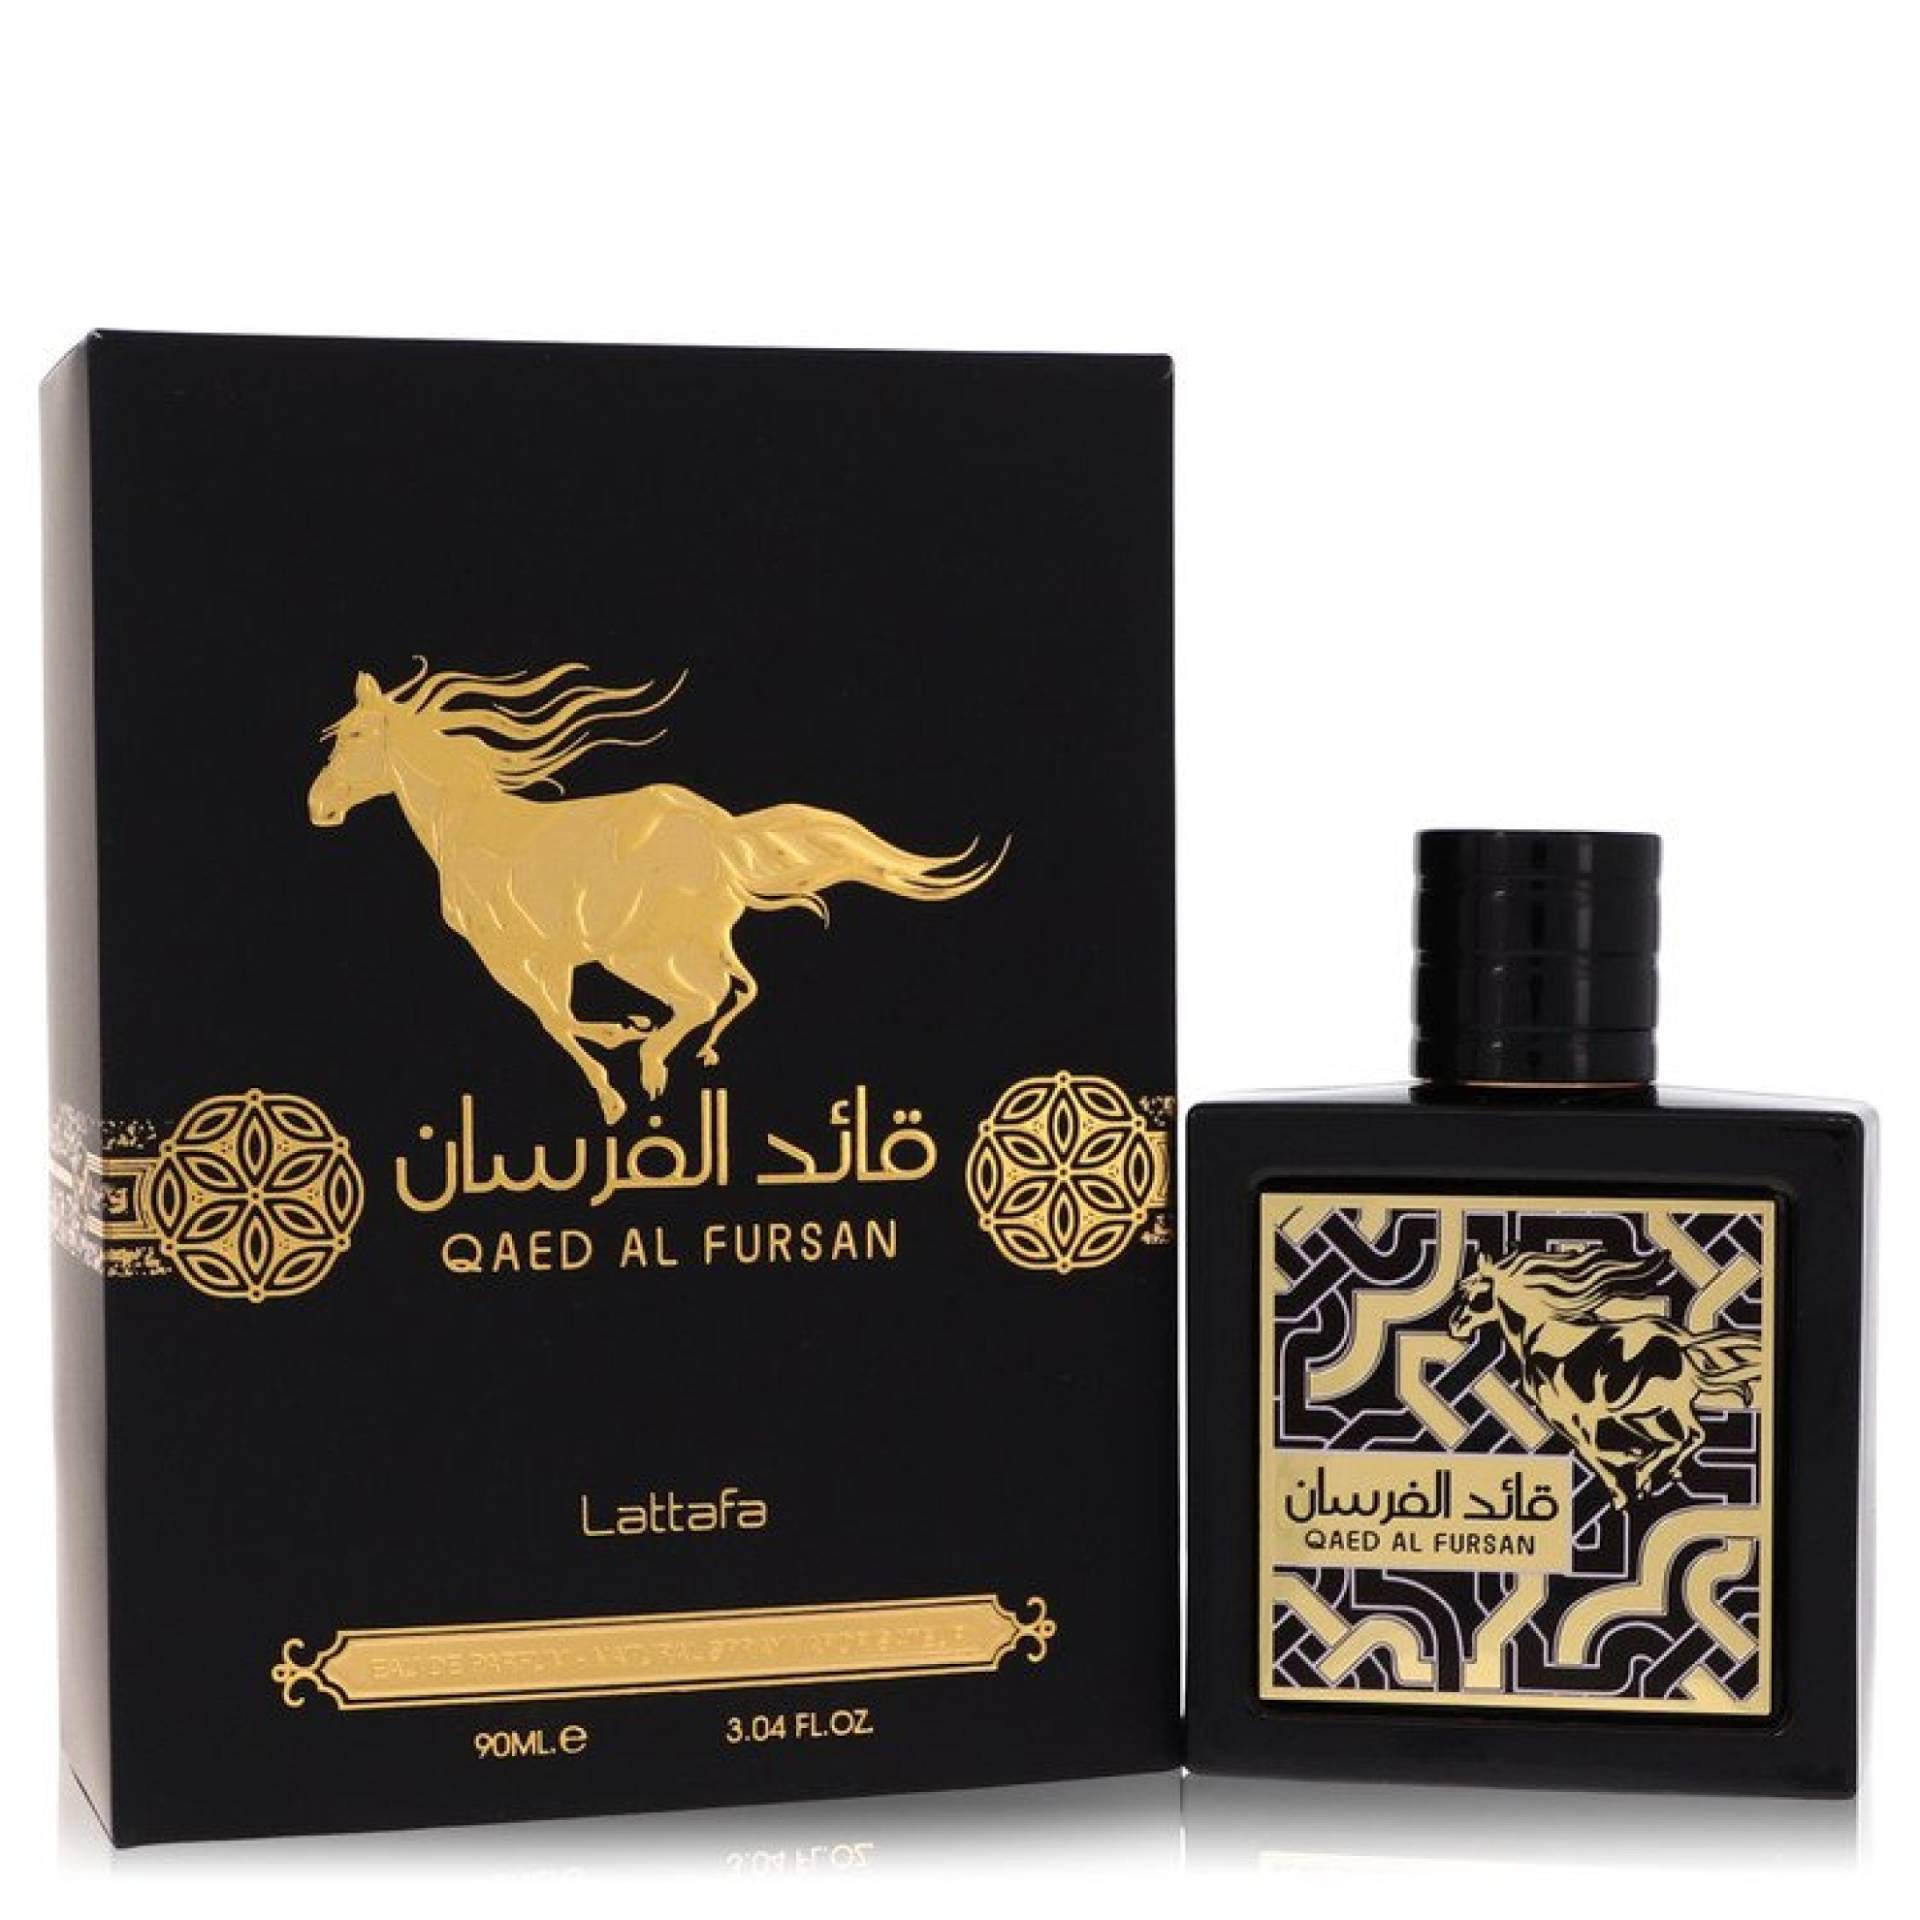 Lattafa Qaed Al Fursan Eau De Parfum Spray 89 ml von Lattafa